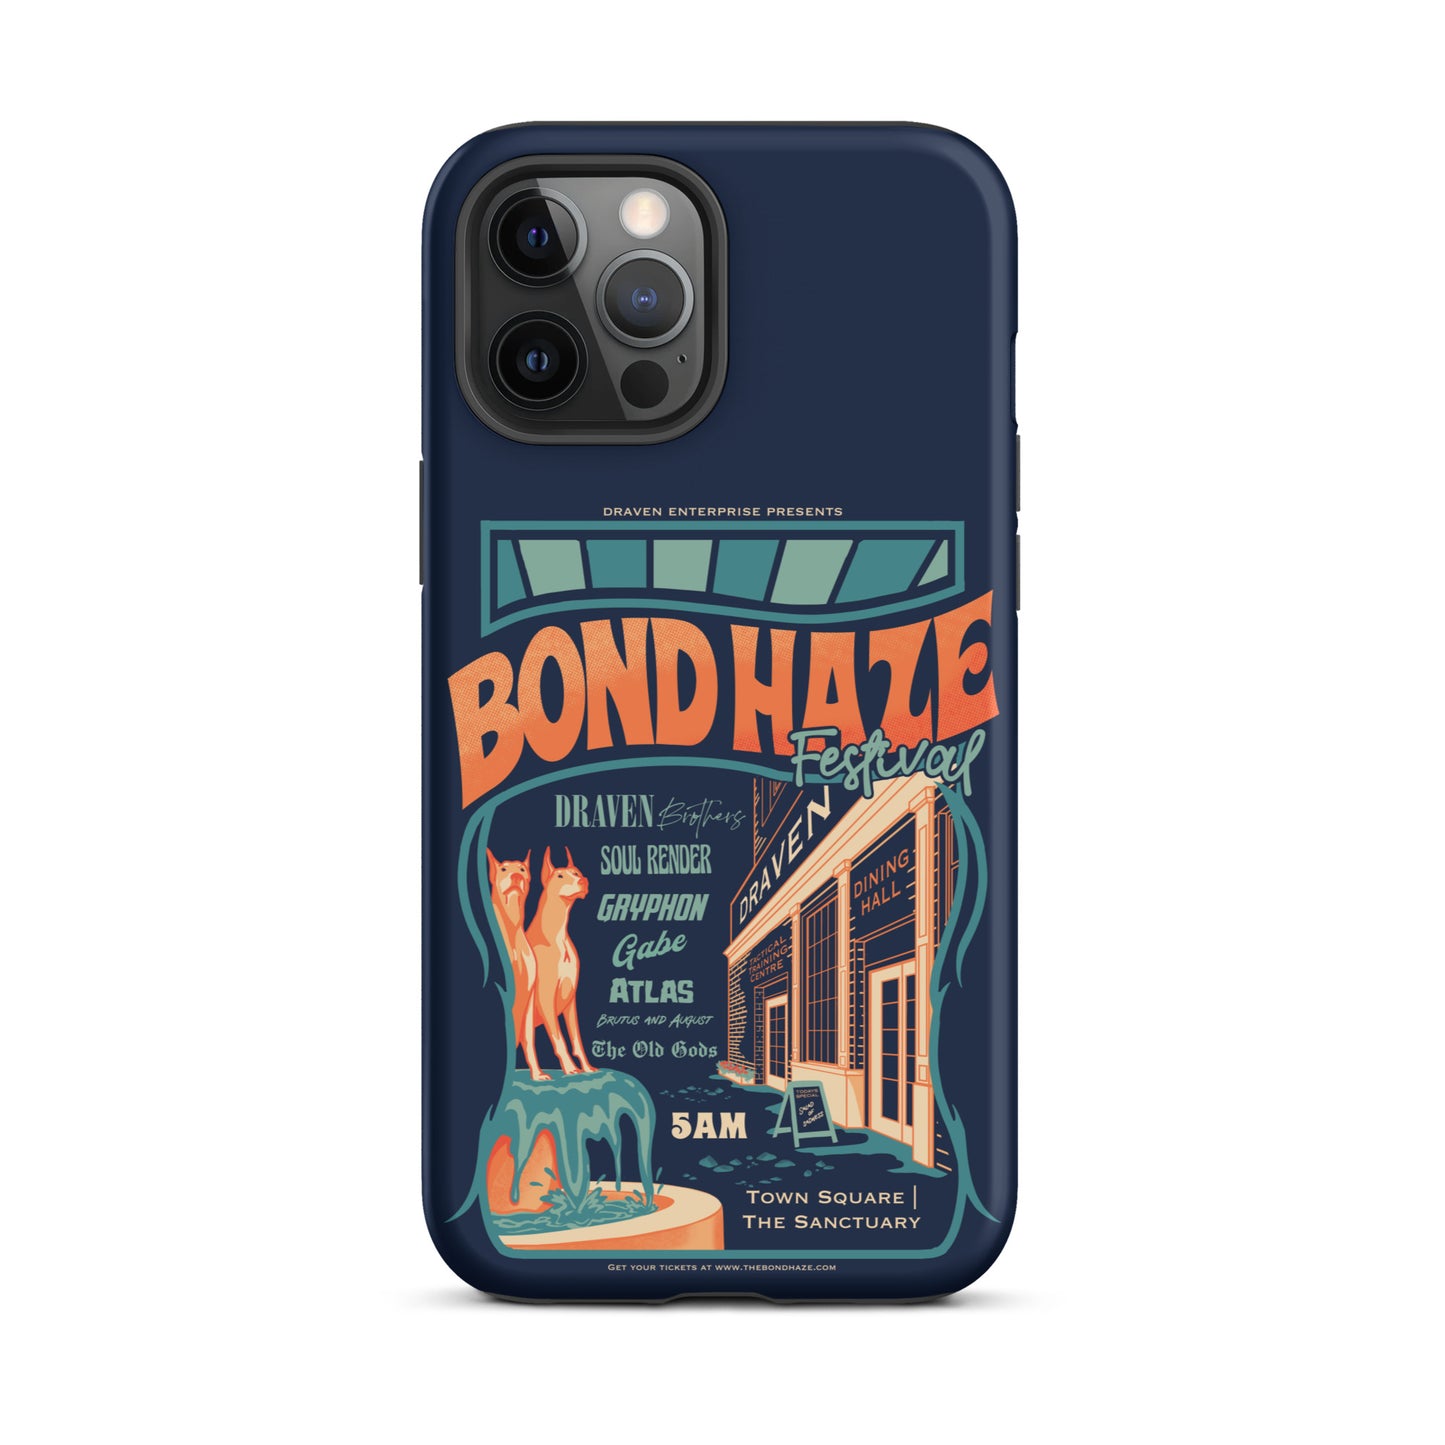 Bond Haze Festival iPhone Case | The Bonds That Tie